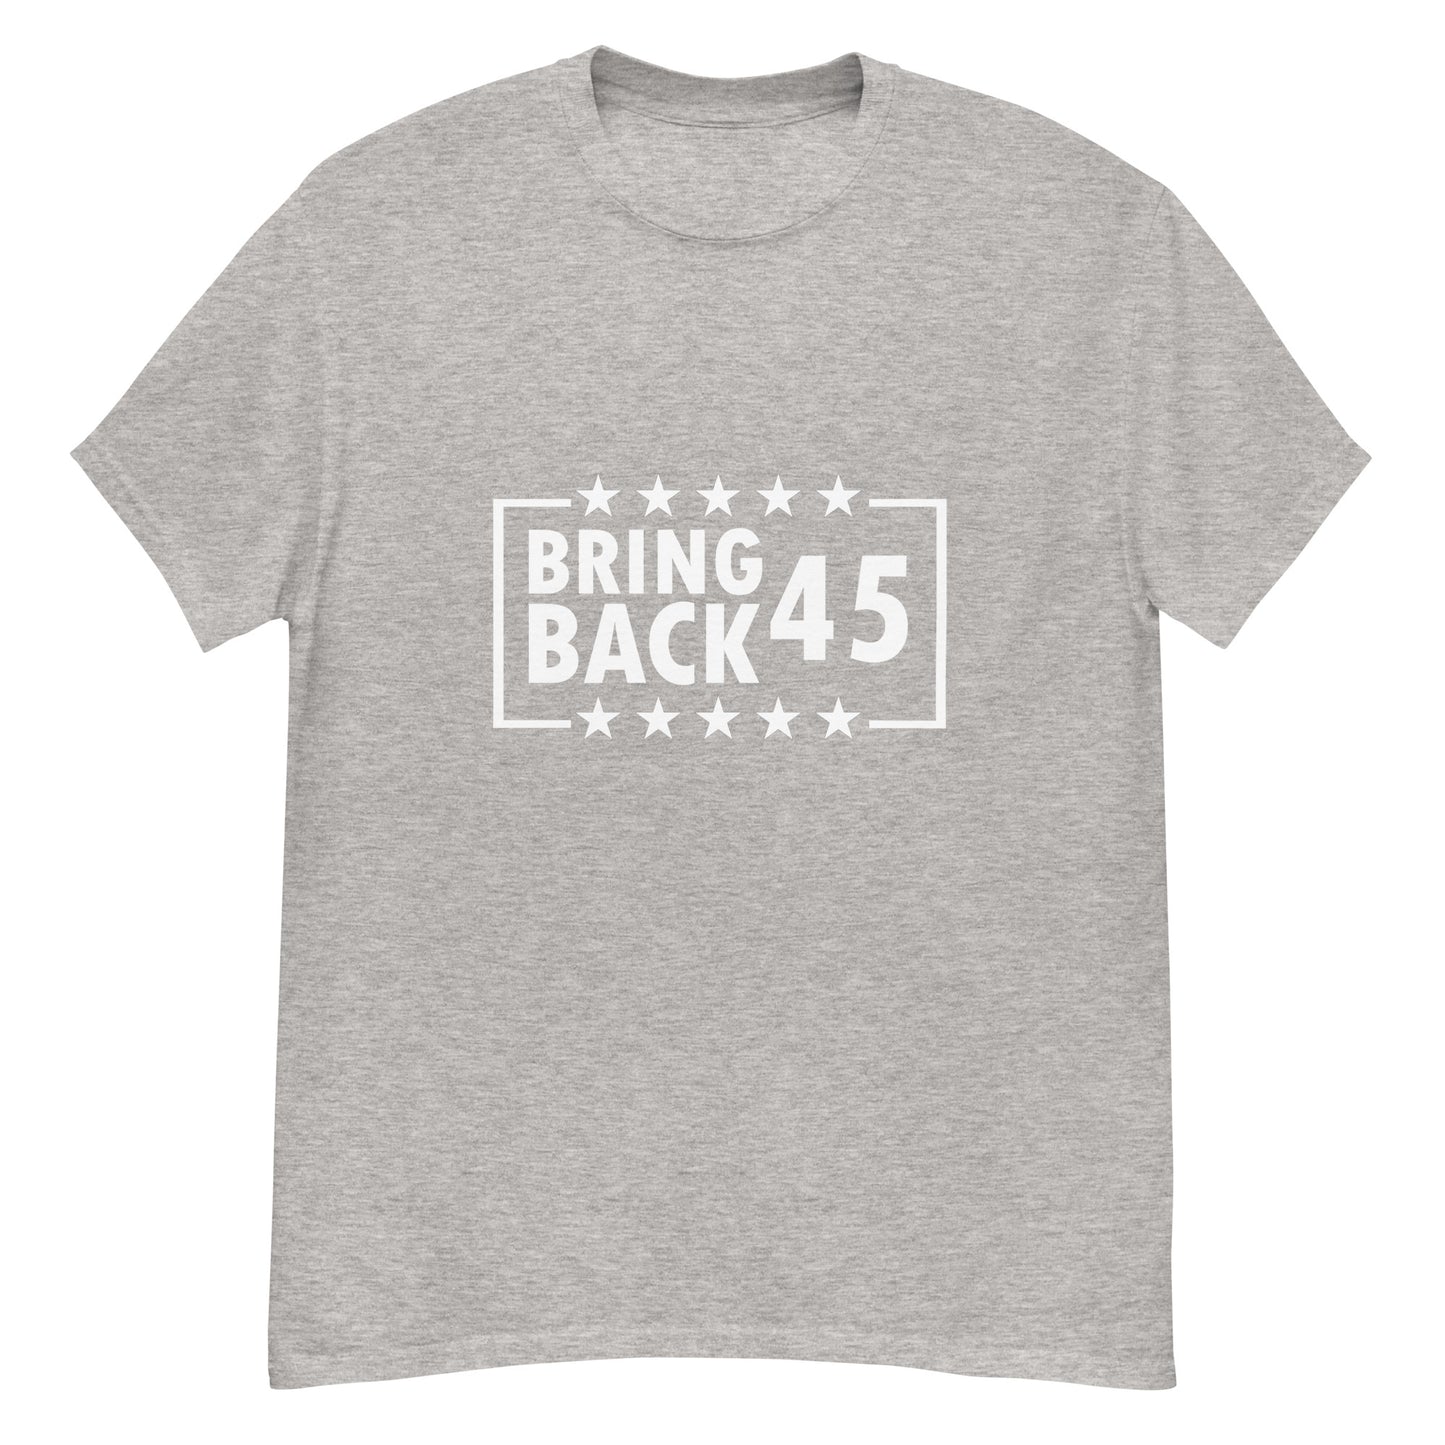 Bring Back 45